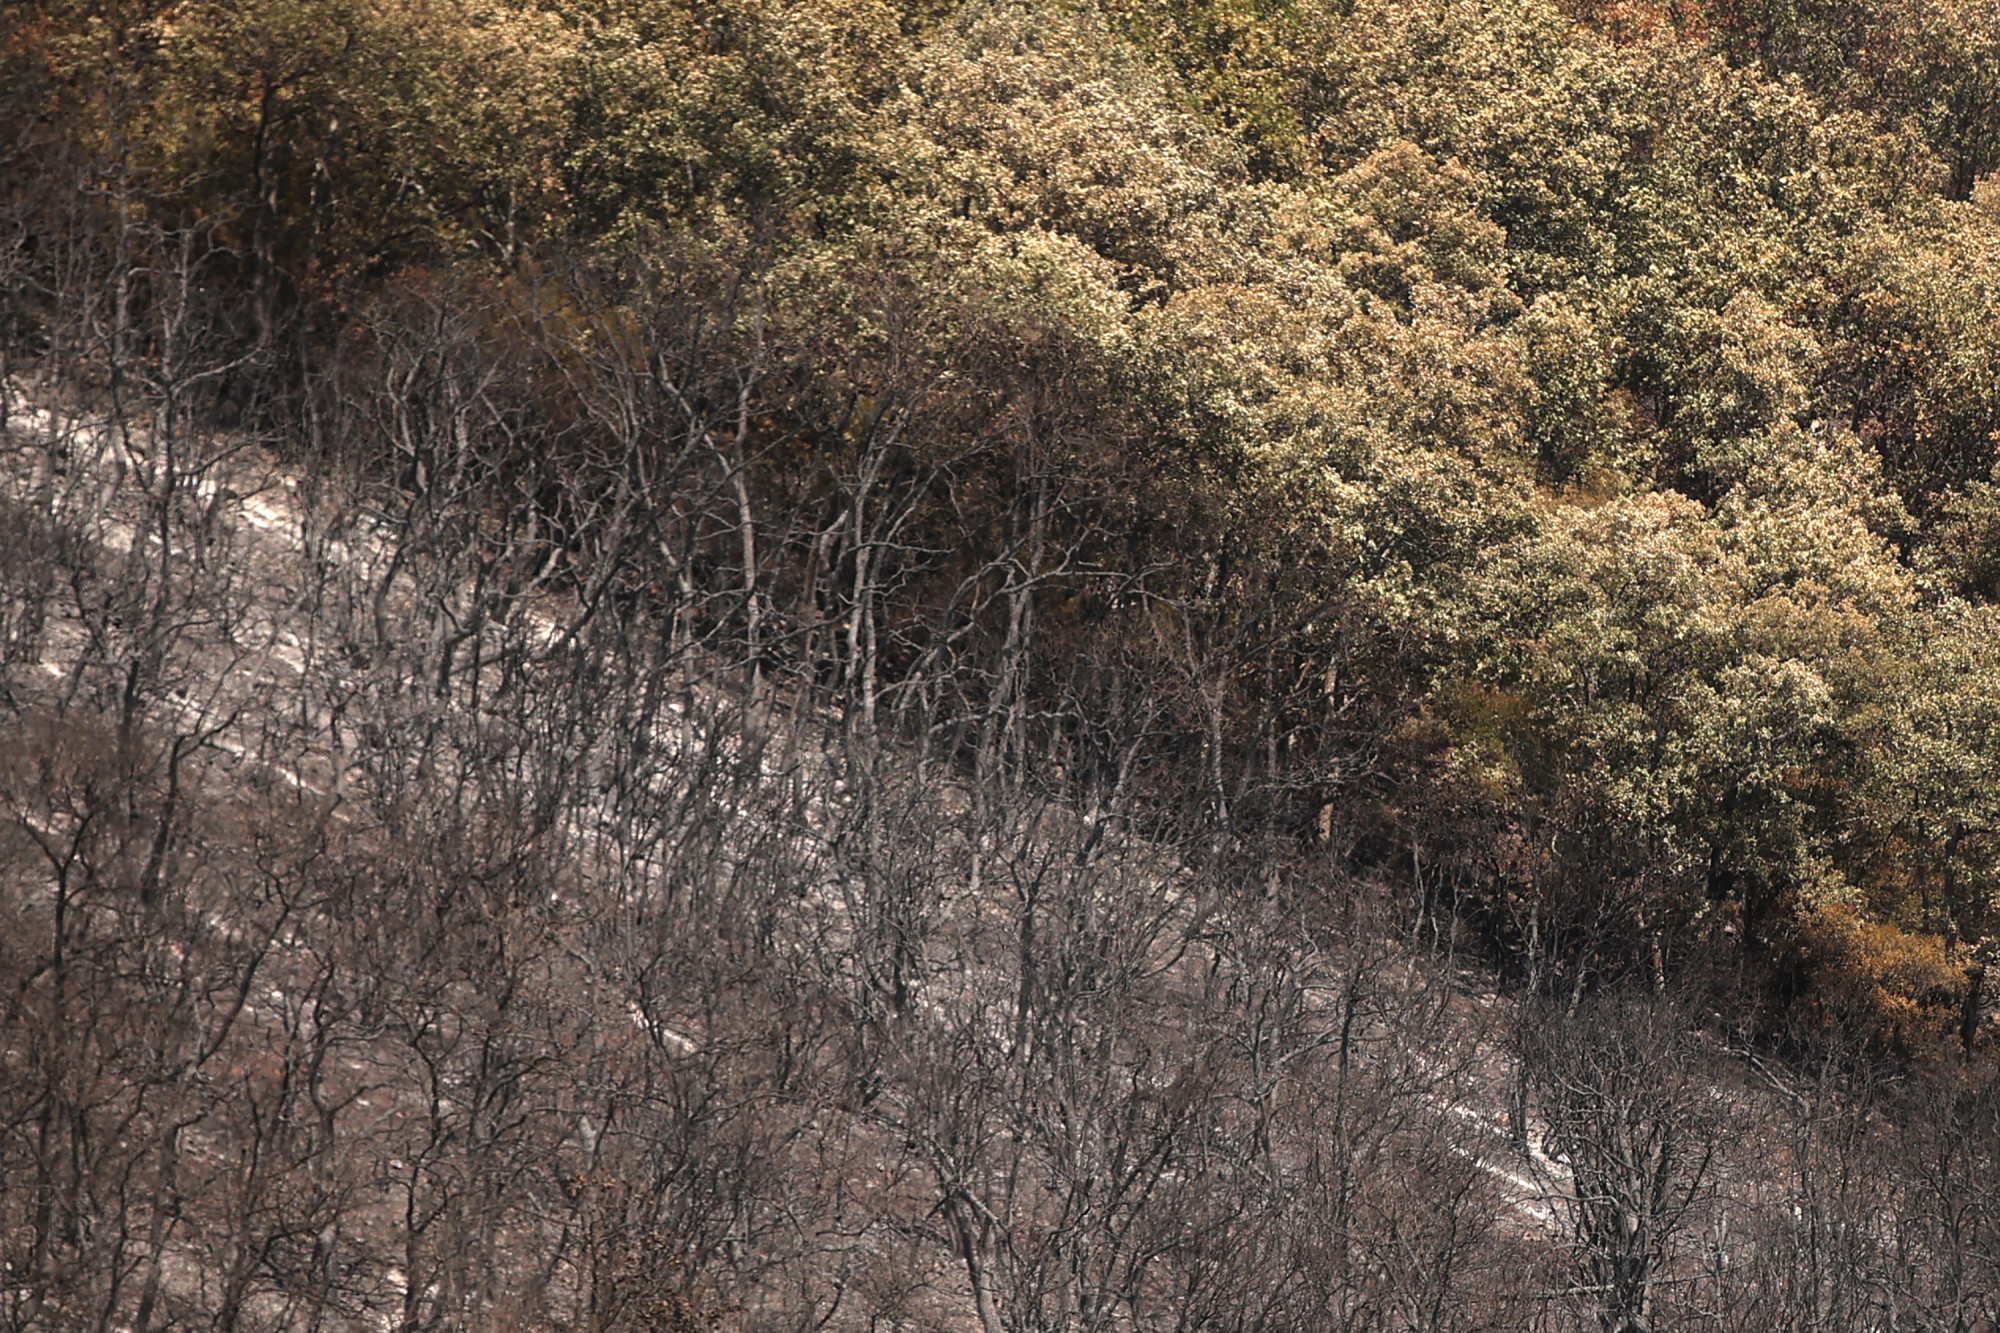 Γύρω από το Évrosz, μια τεράστια περιοχή προστατευόμενου δάσους κάηκε και οι φλόγες παραμένουν υπό έλεγχο στην περιοχή.